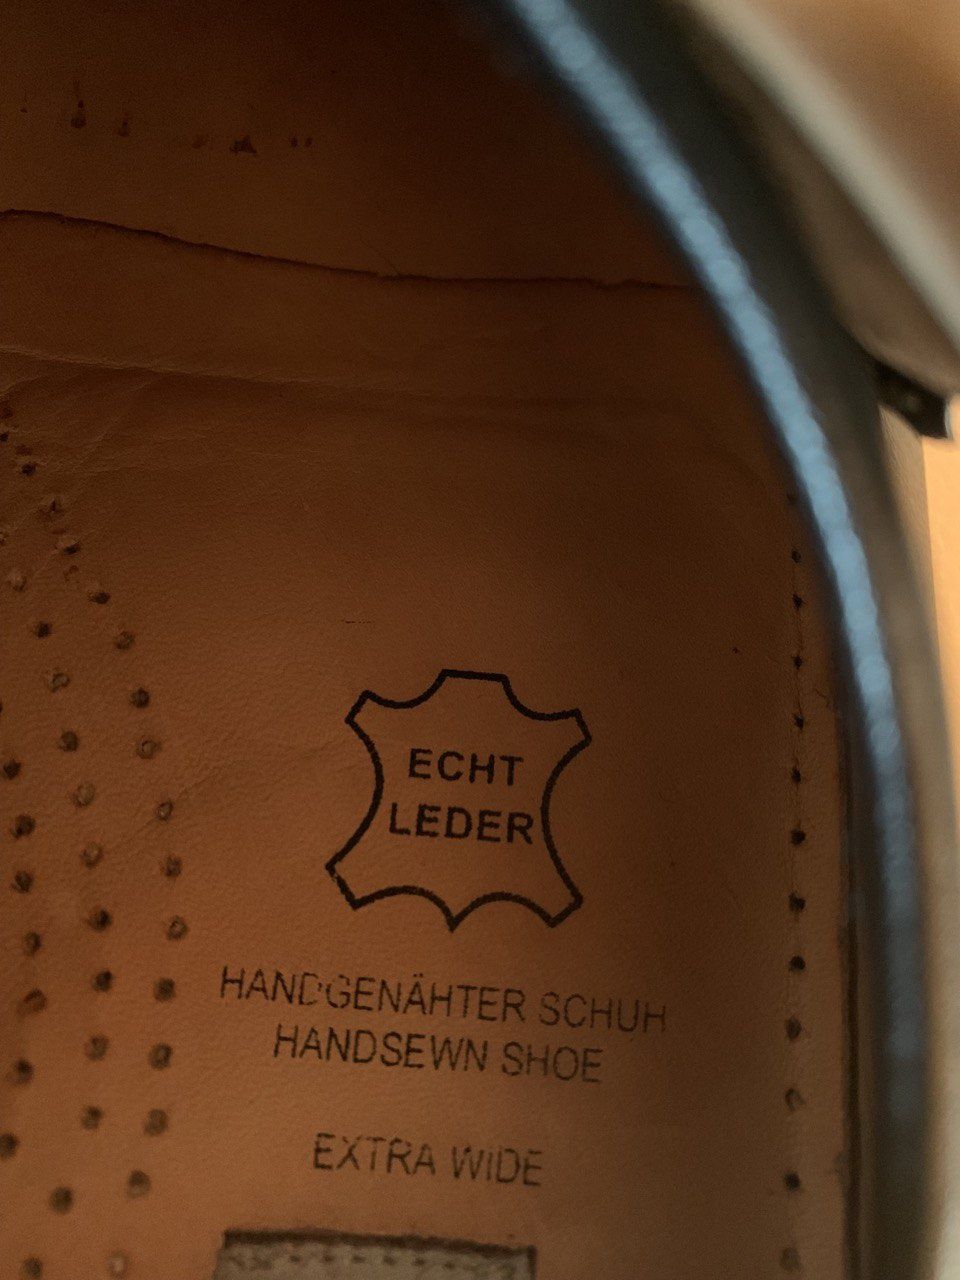 Мужская обувь Европейского бренда «Mersedes»